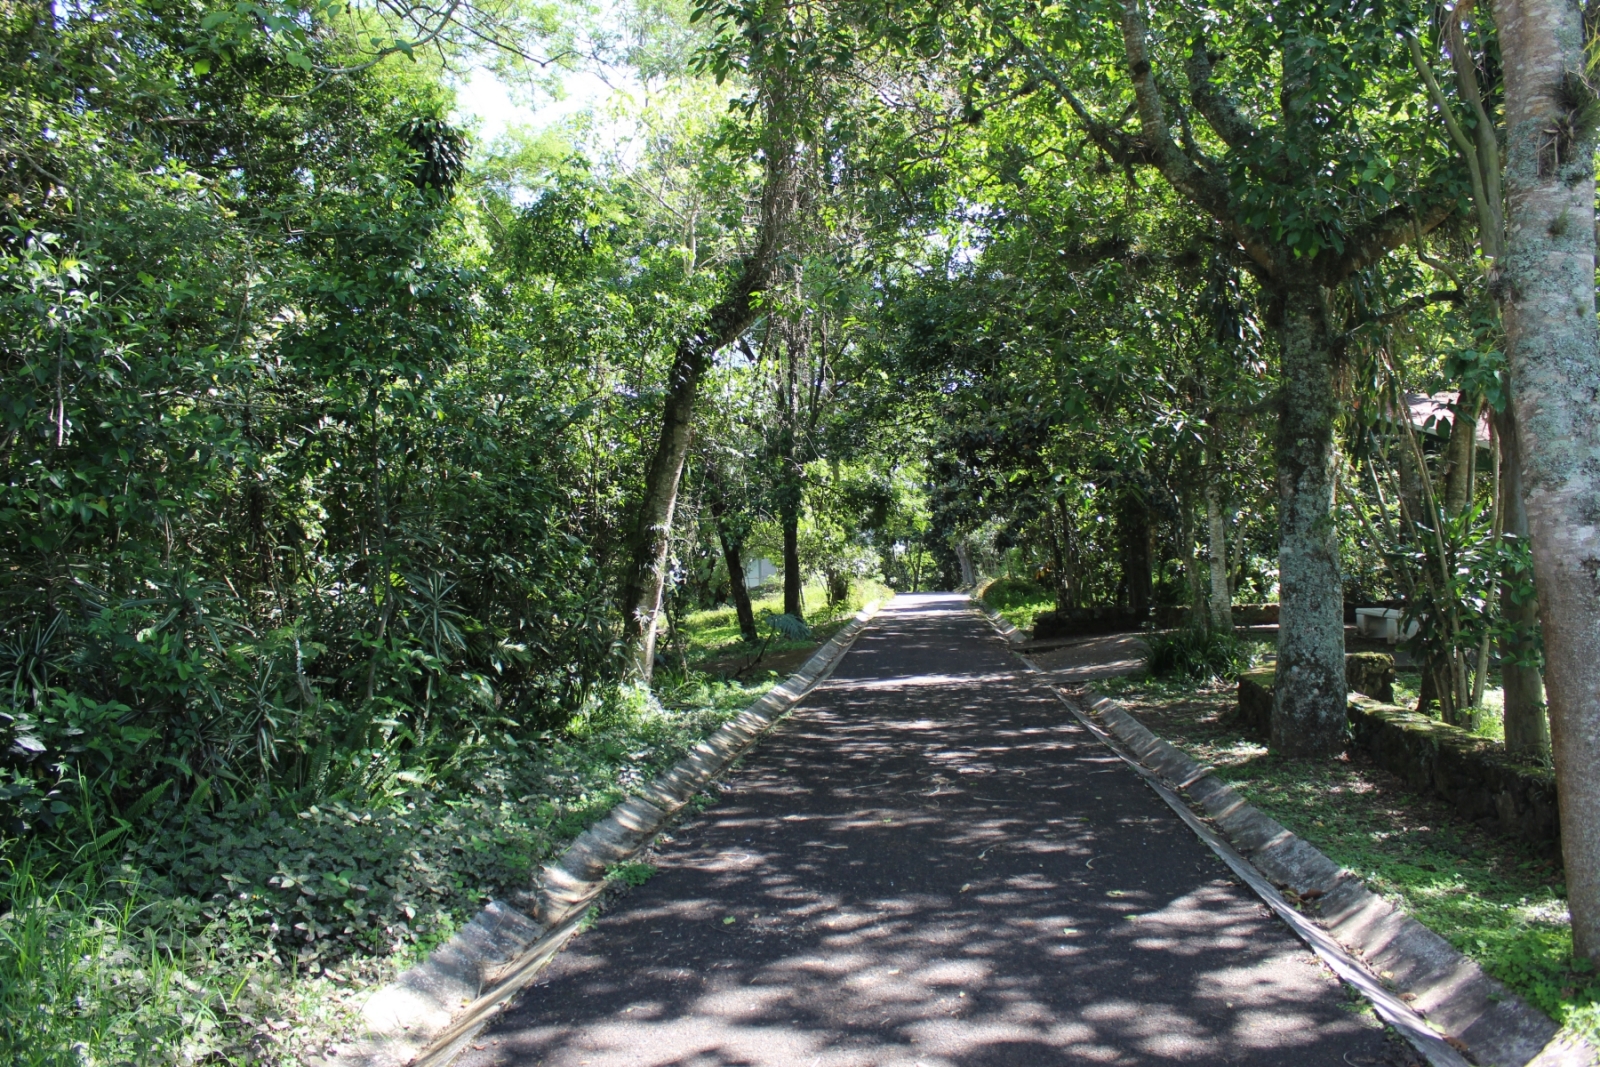 Parque Natura, oasis de Xalapa - Identidad Veracruz